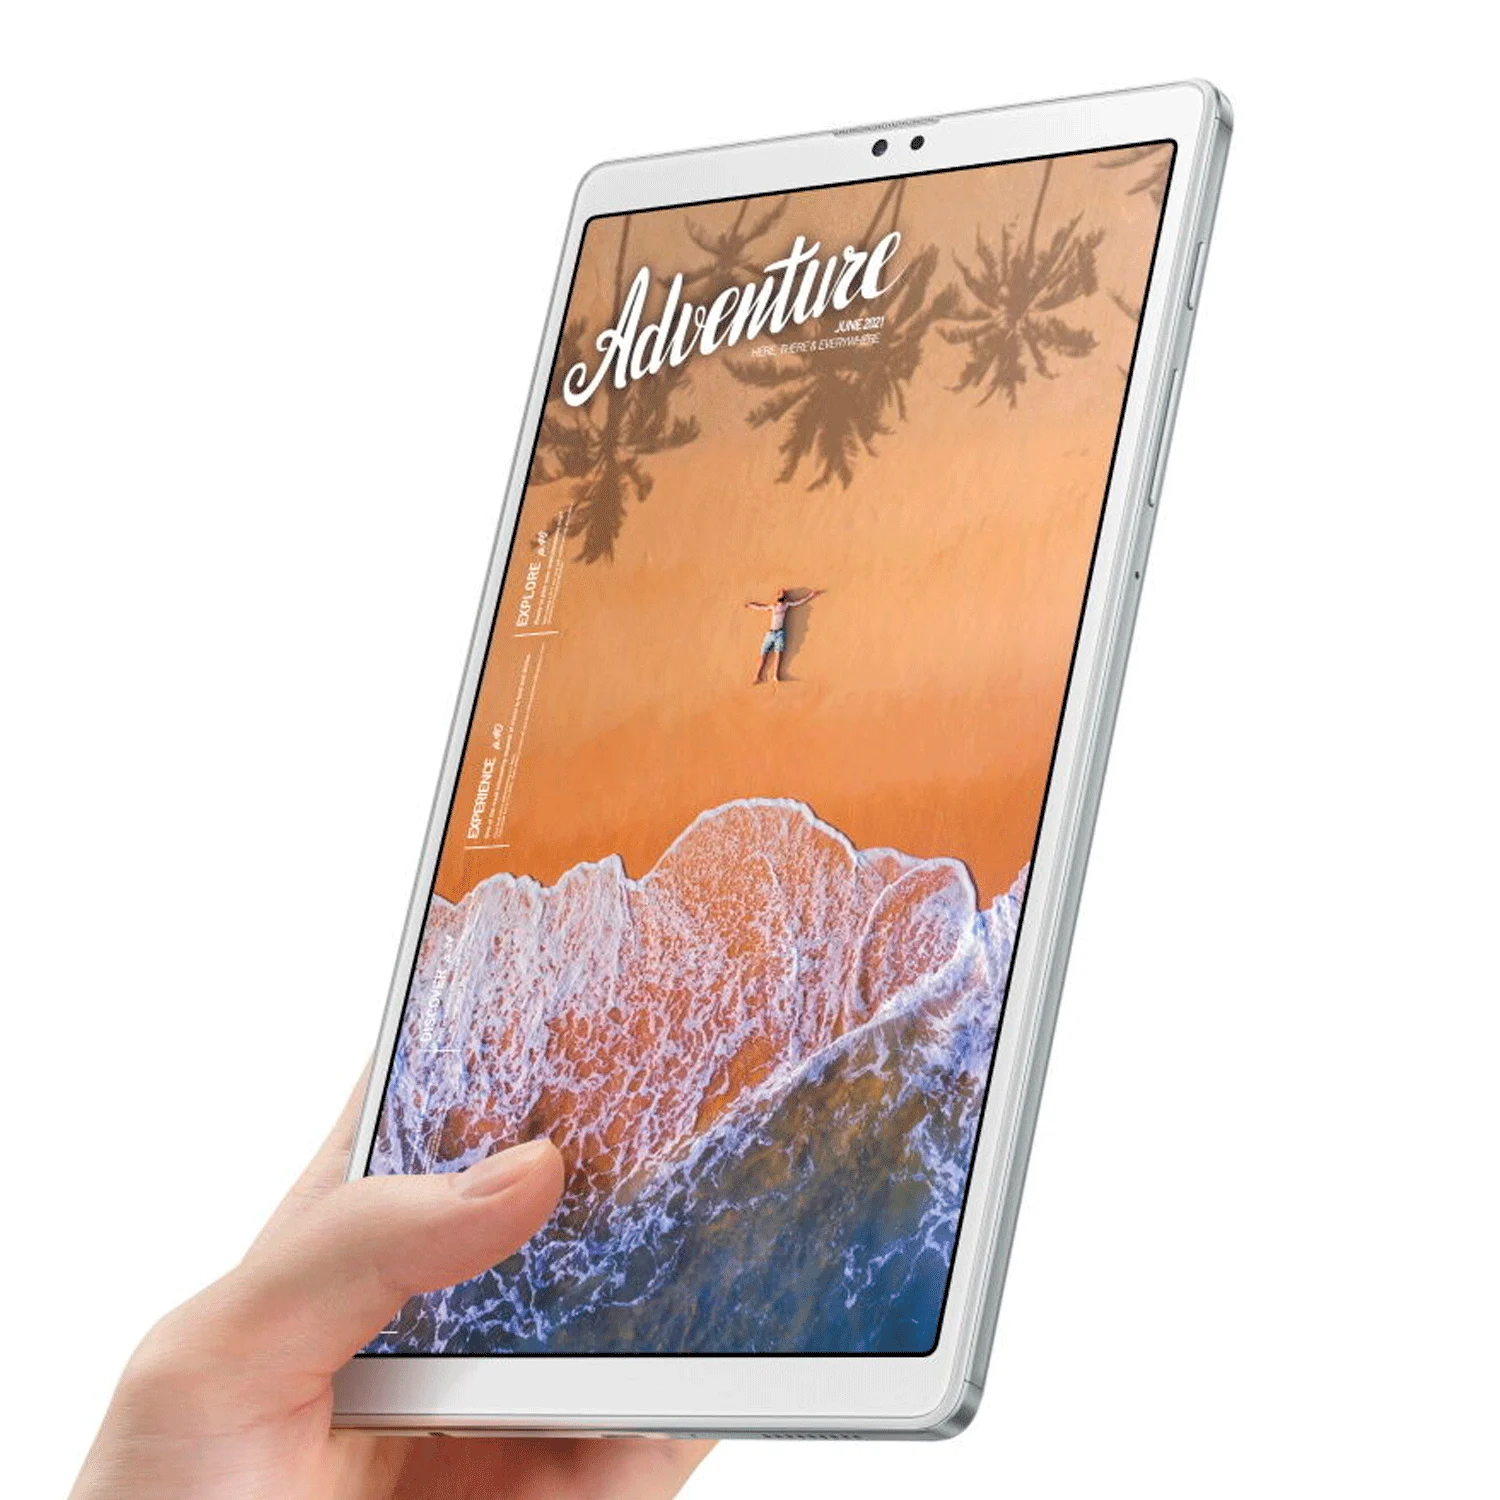 Tablet Samsung Tab A7 Lite 32GB / 3GB RAM / Tela 8.7" / 8MP + 2MP - Prata (SM-T220)